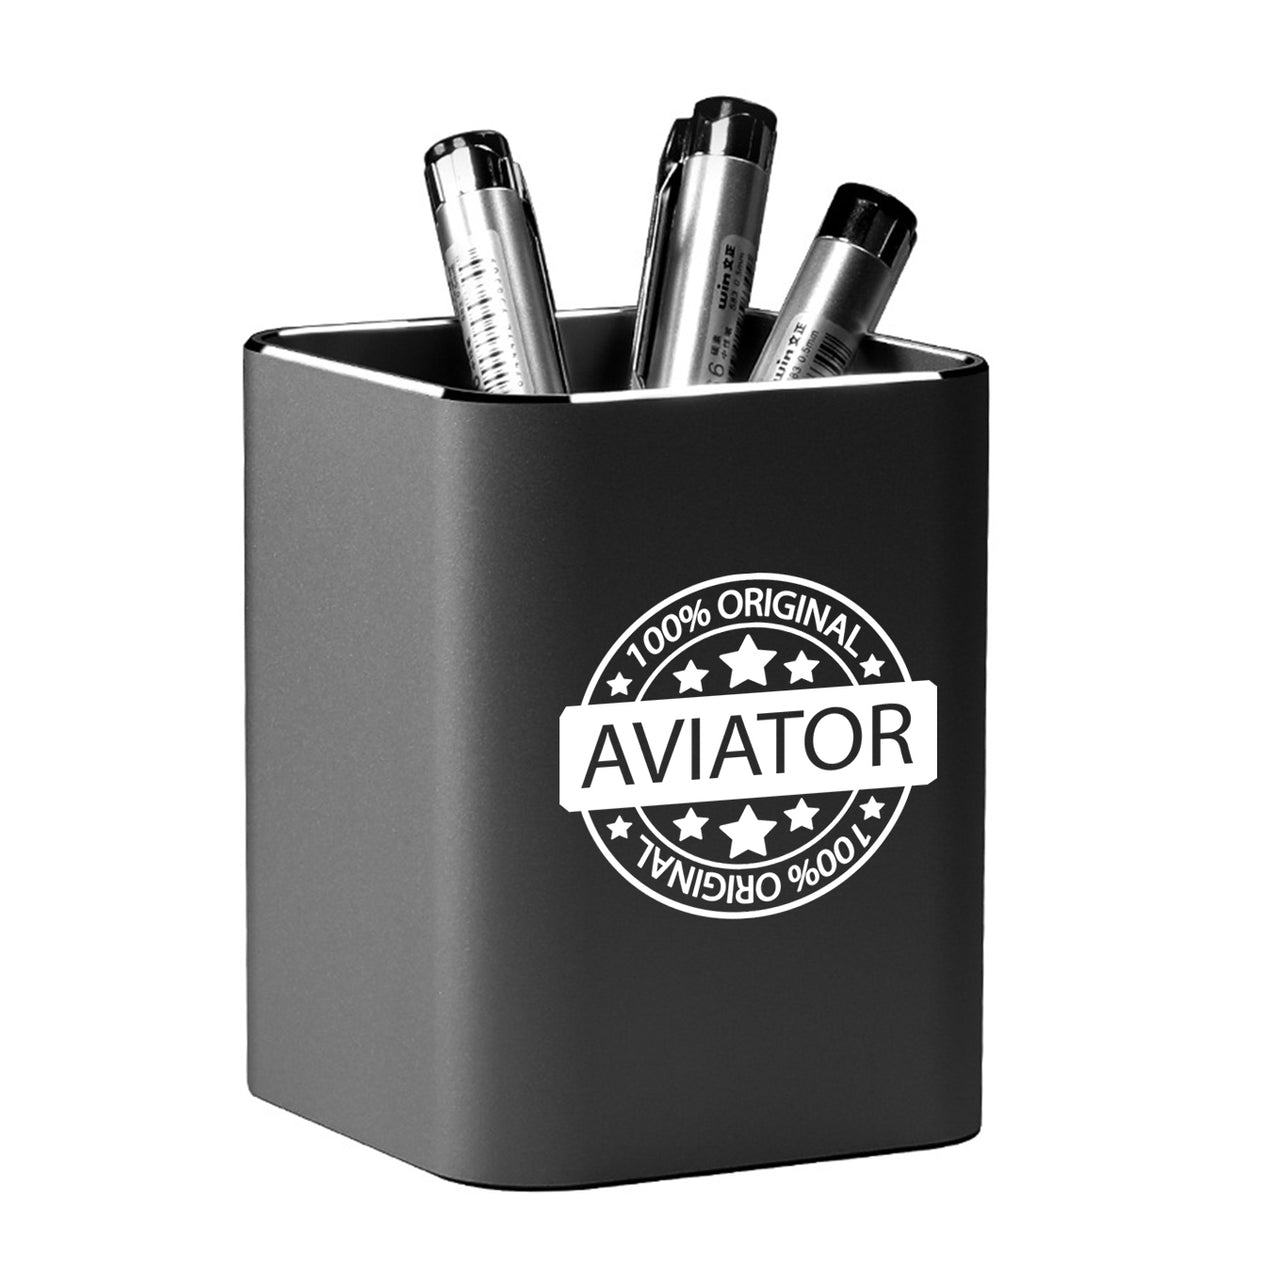 100 Original Aviator Designed Aluminium Alloy Pen Holders